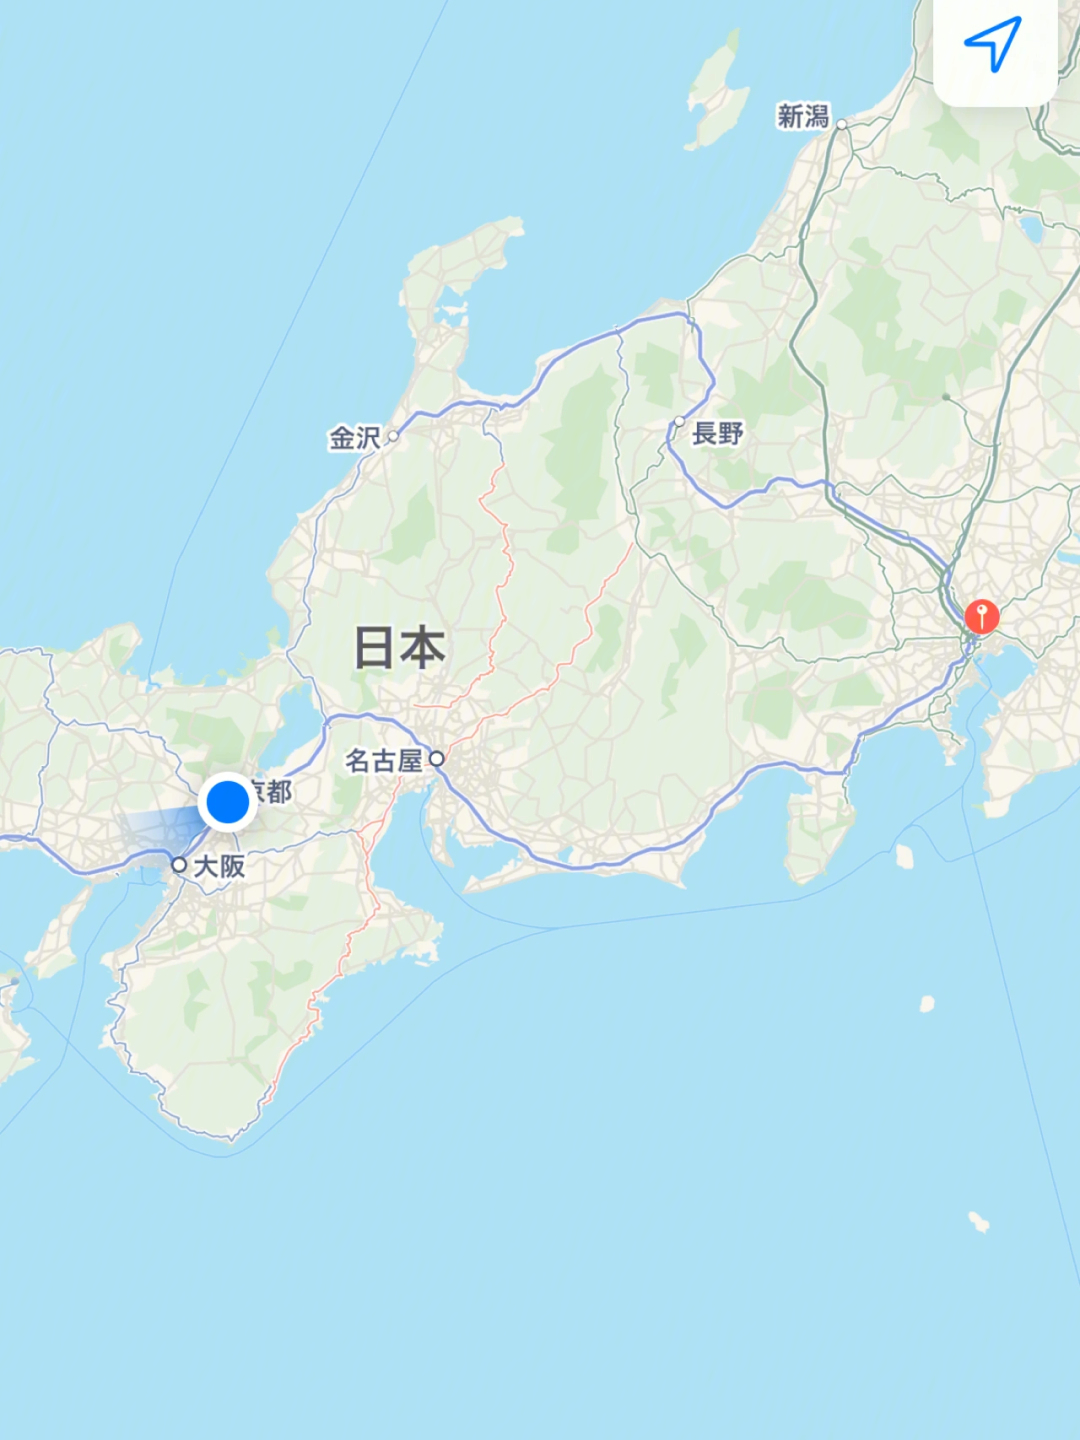 奈良地理位置图片